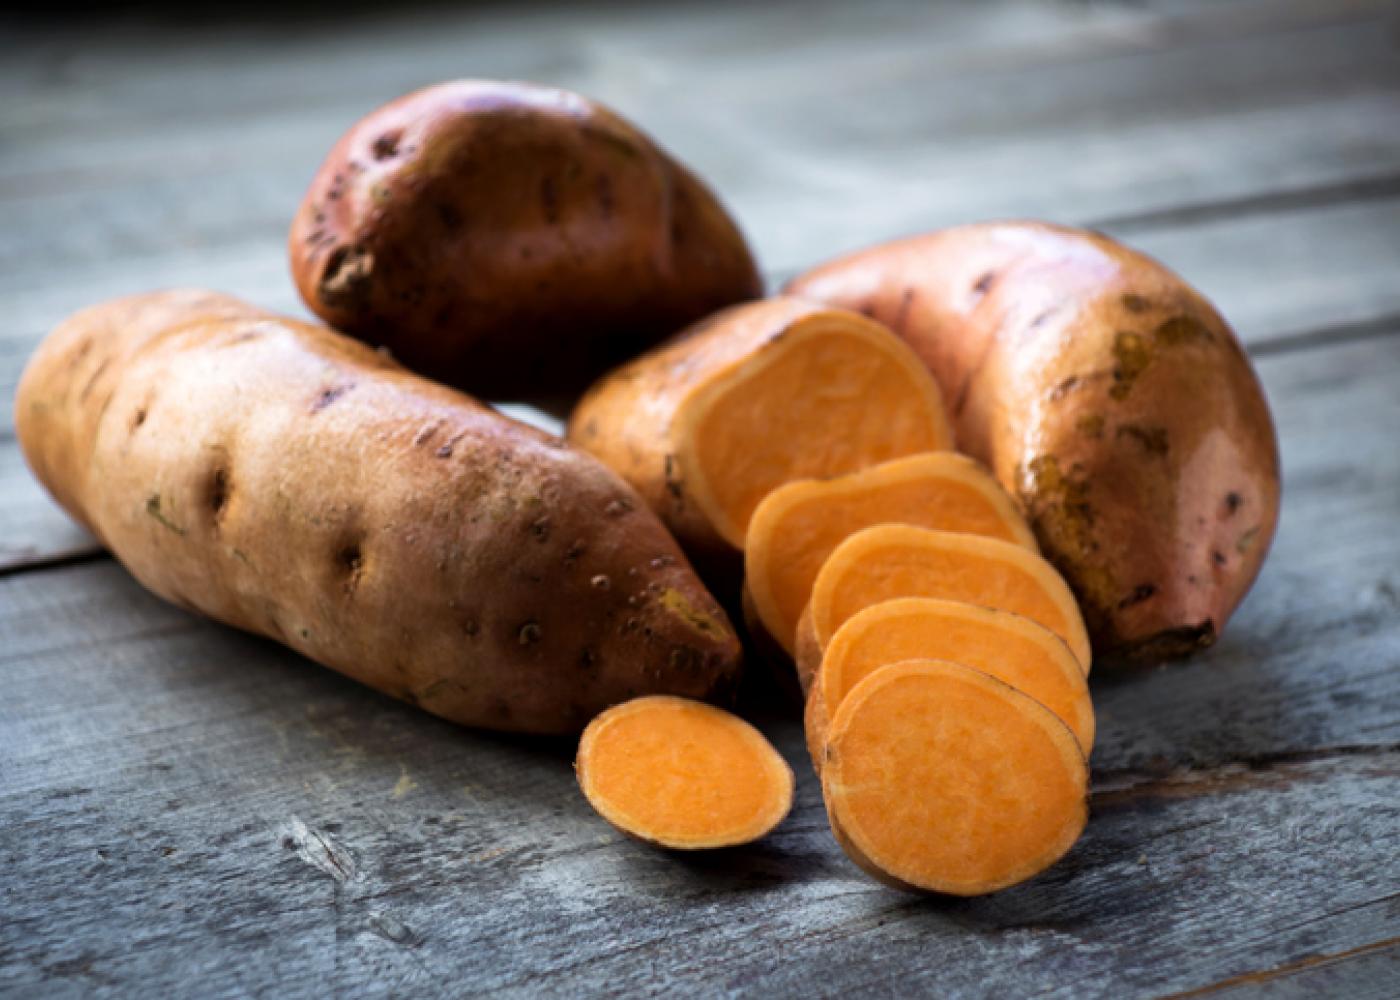 Sweet Potato - 1kg